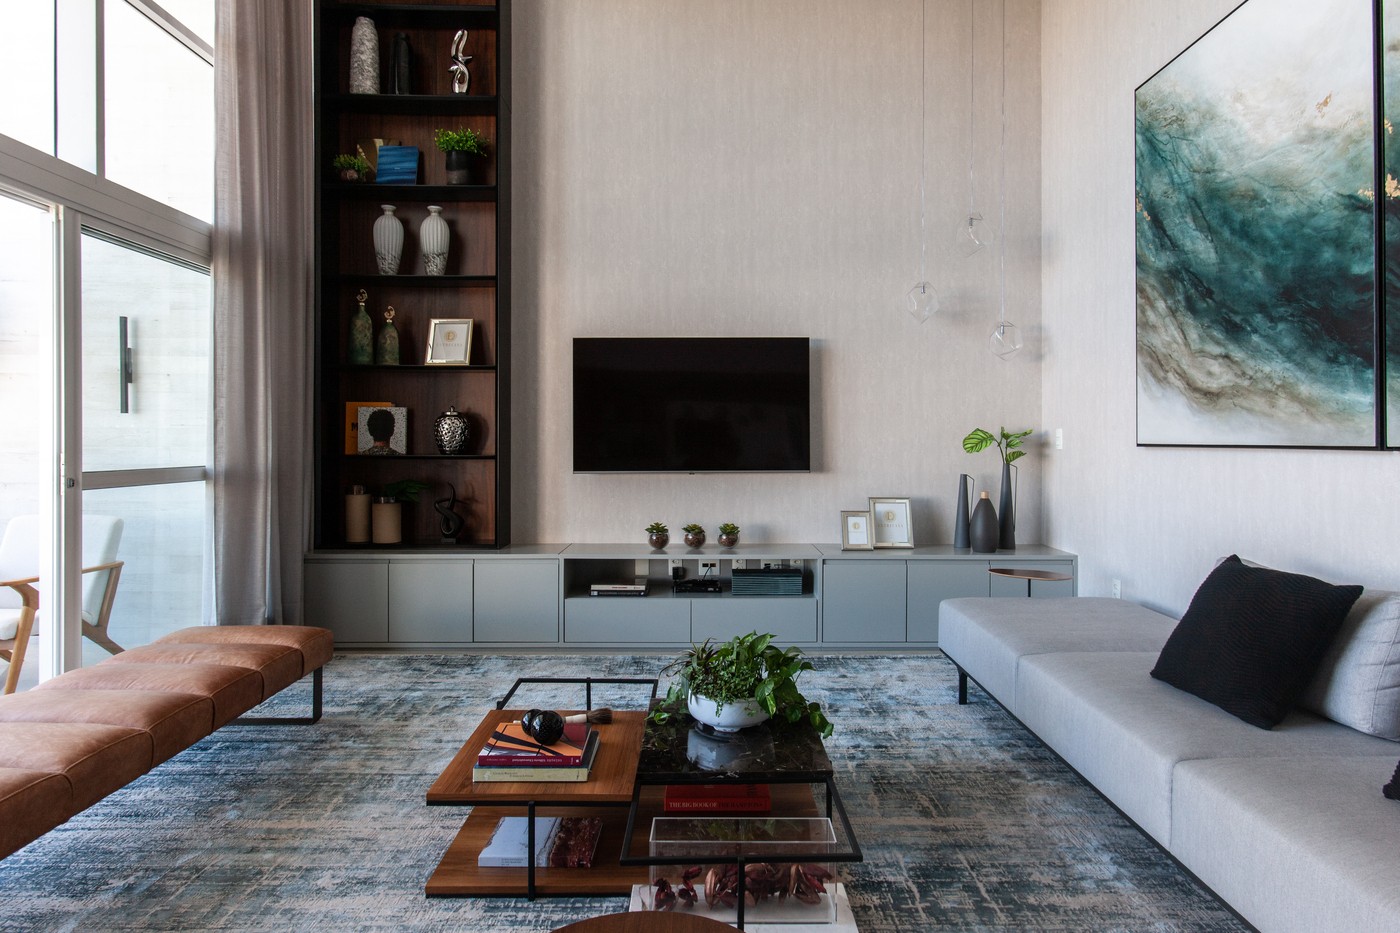 Décor do dia: sala de estar com pé-direito duplo e estilo contemporâneo (Foto: Eder Bruscagin)